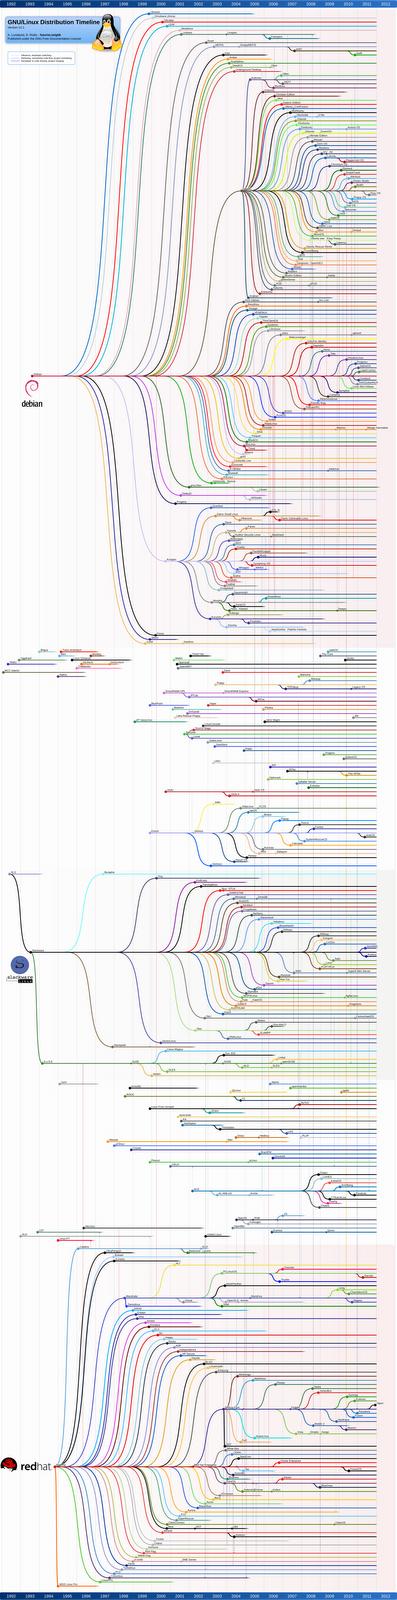 Linux Distribution Timeline Feb 2012